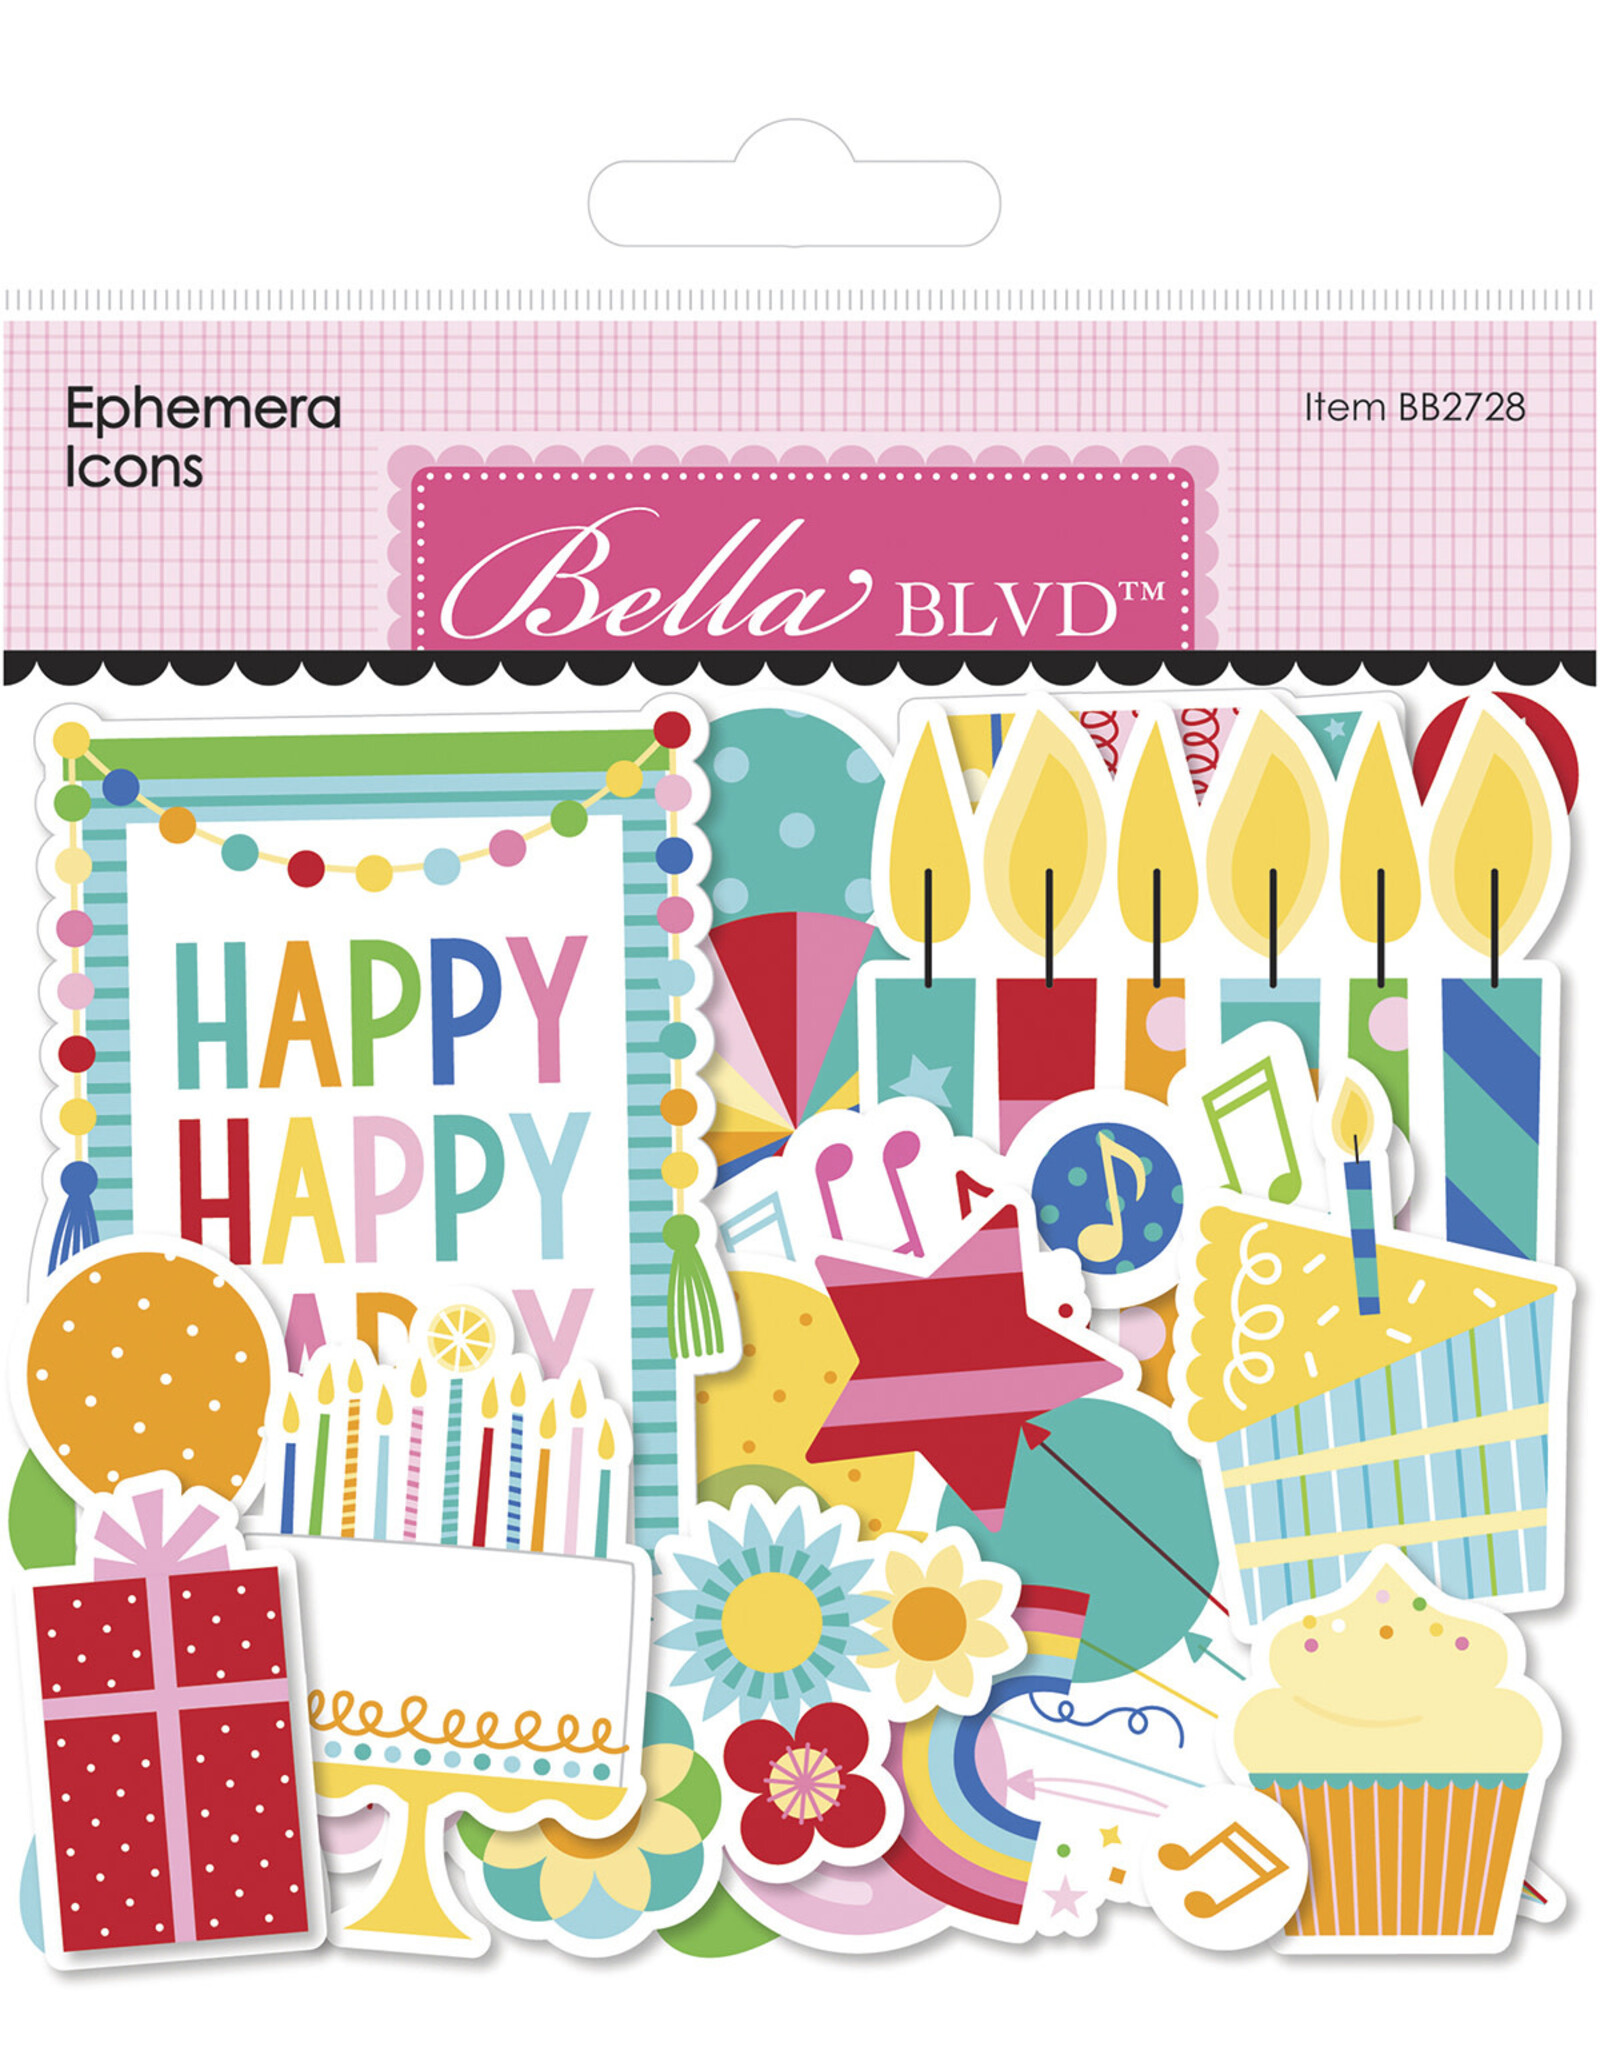 BELLA BLVD Birthday Bash Ephemera Icons